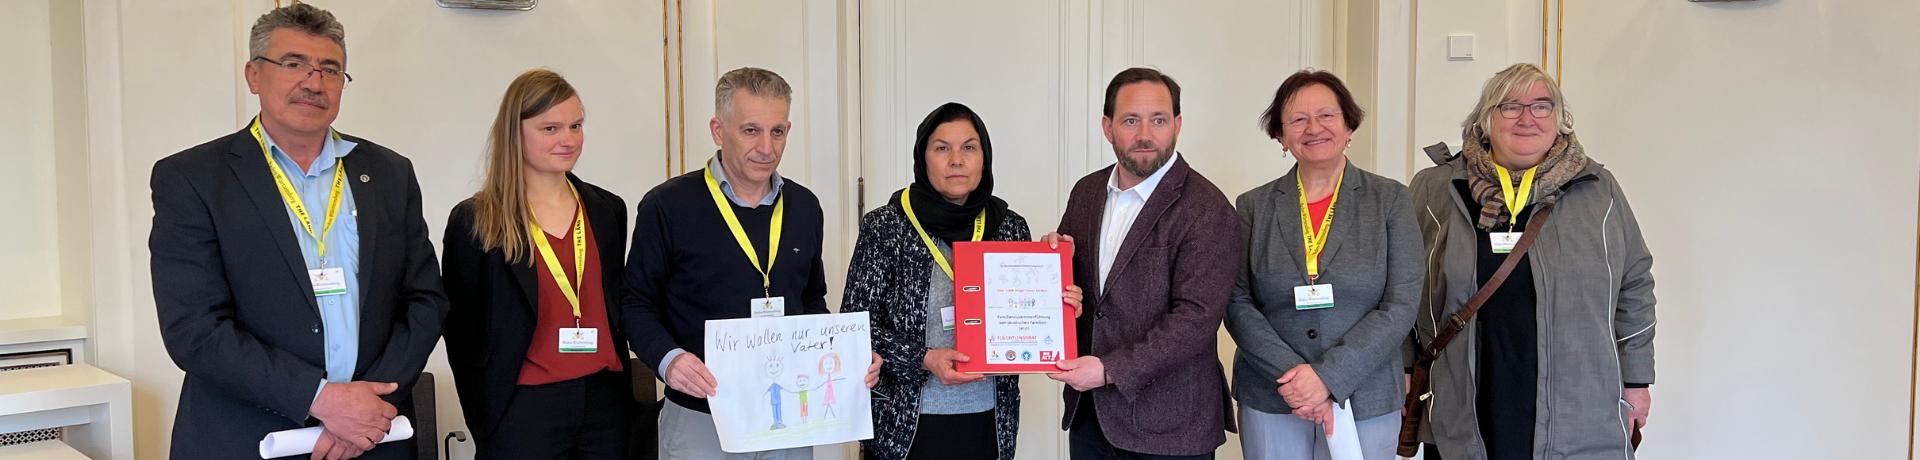 Petition zum Sonderkontingent jesidischer Familien in Stuttgart. Auf dem Bild IGFM und weiter Organisationen.